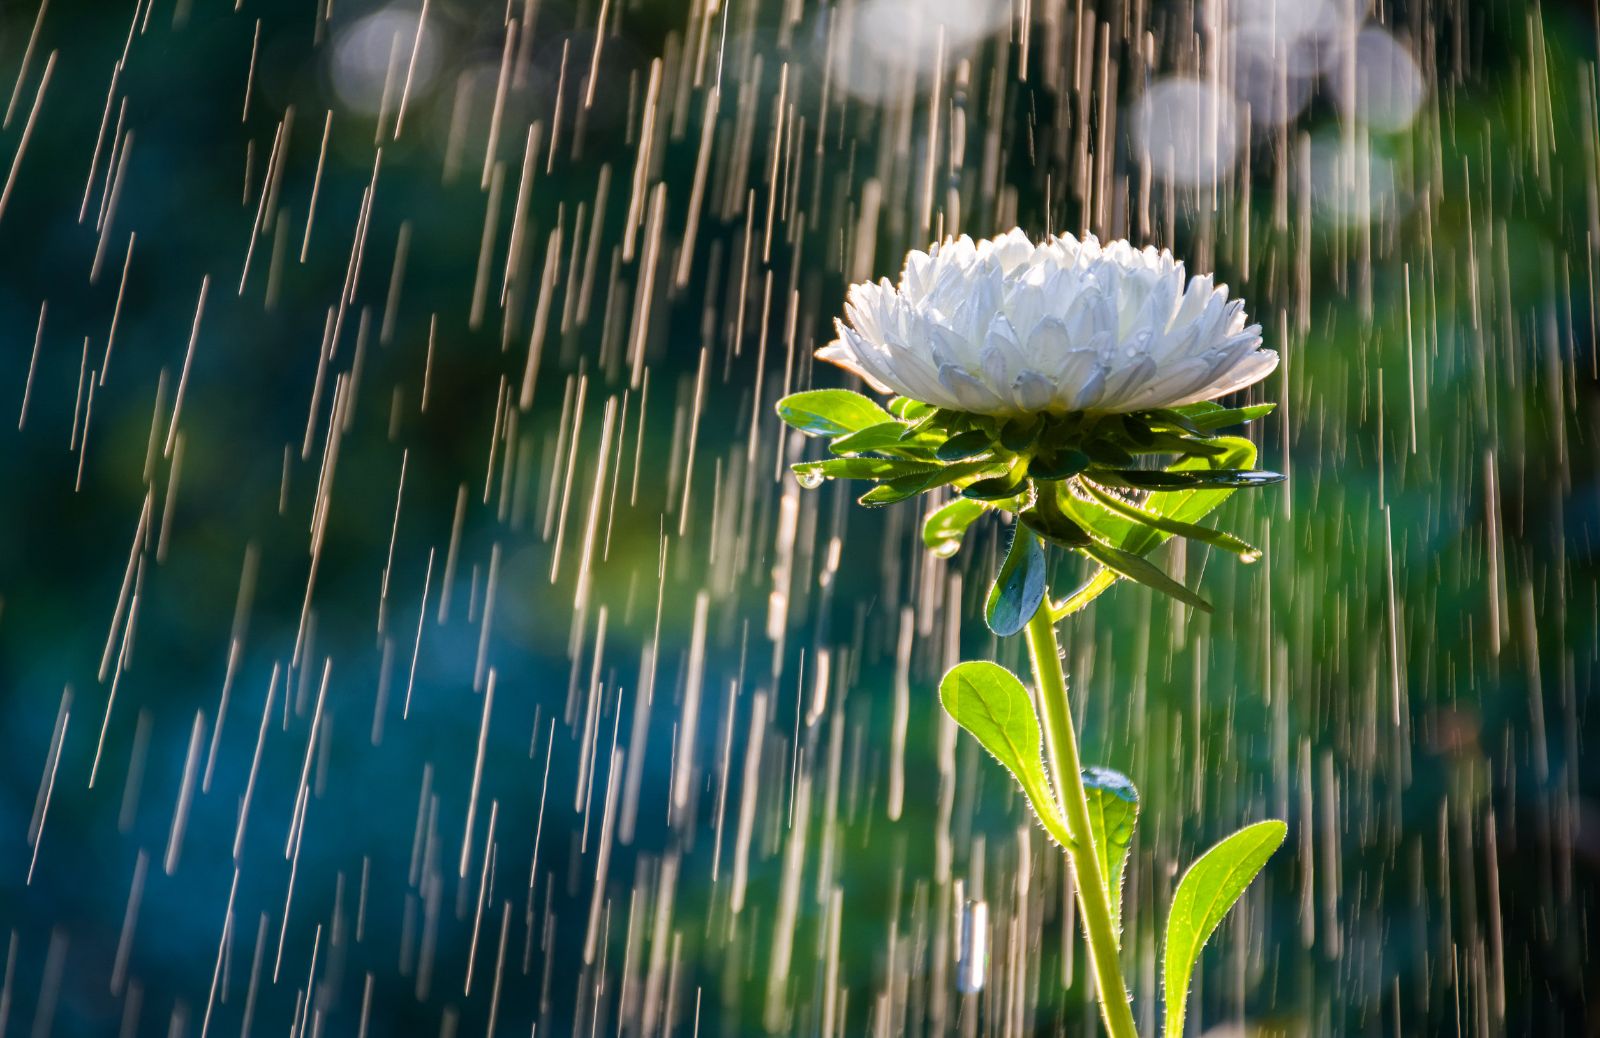 Acqua piovana: come raccoglierla e usarla in giardino (e non solo)